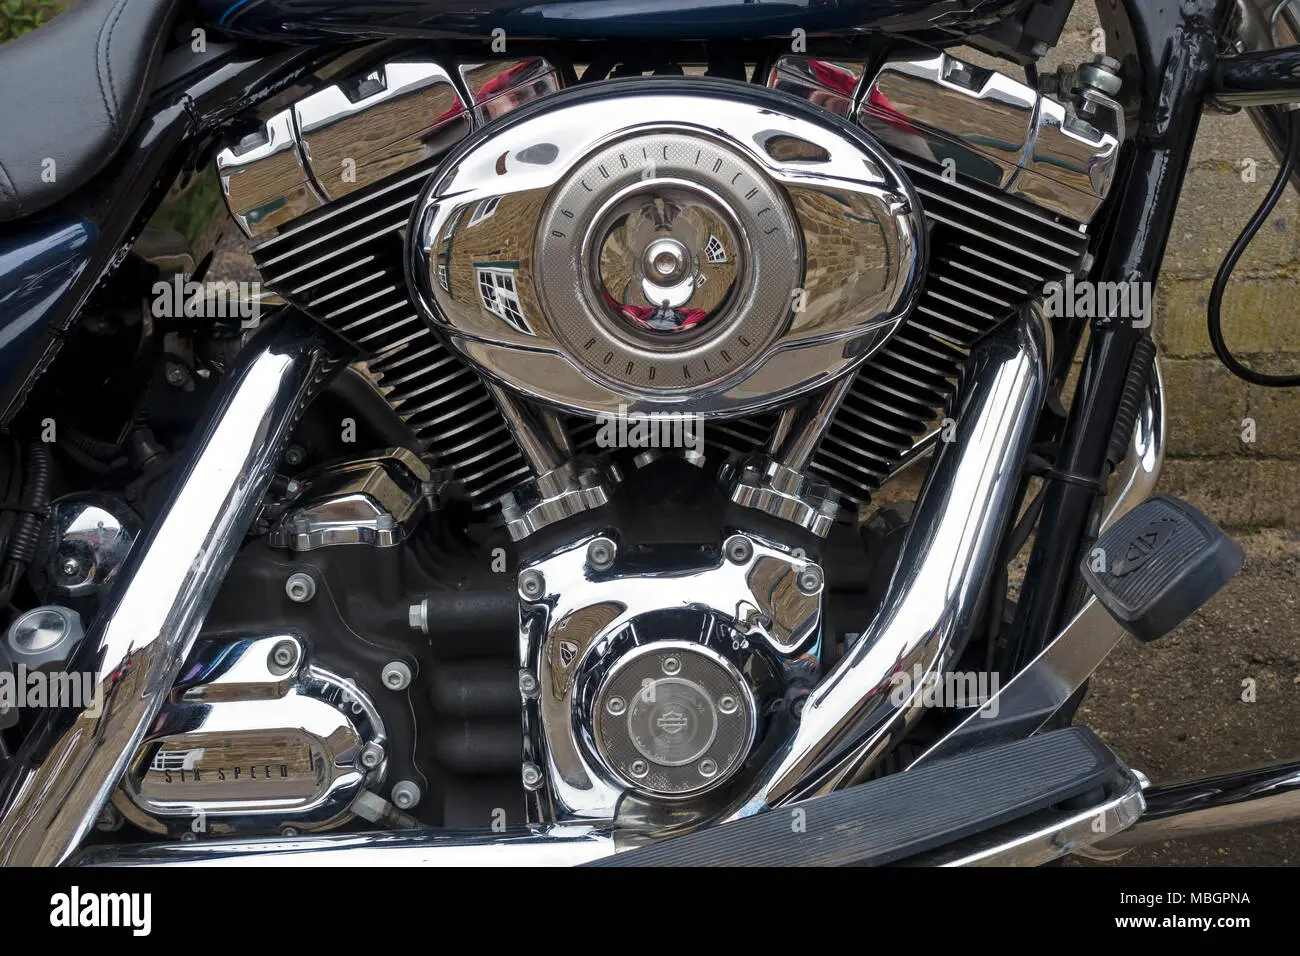 fotografia v coniglione motor de motocicleta - Cómo hacer fotos en la moto